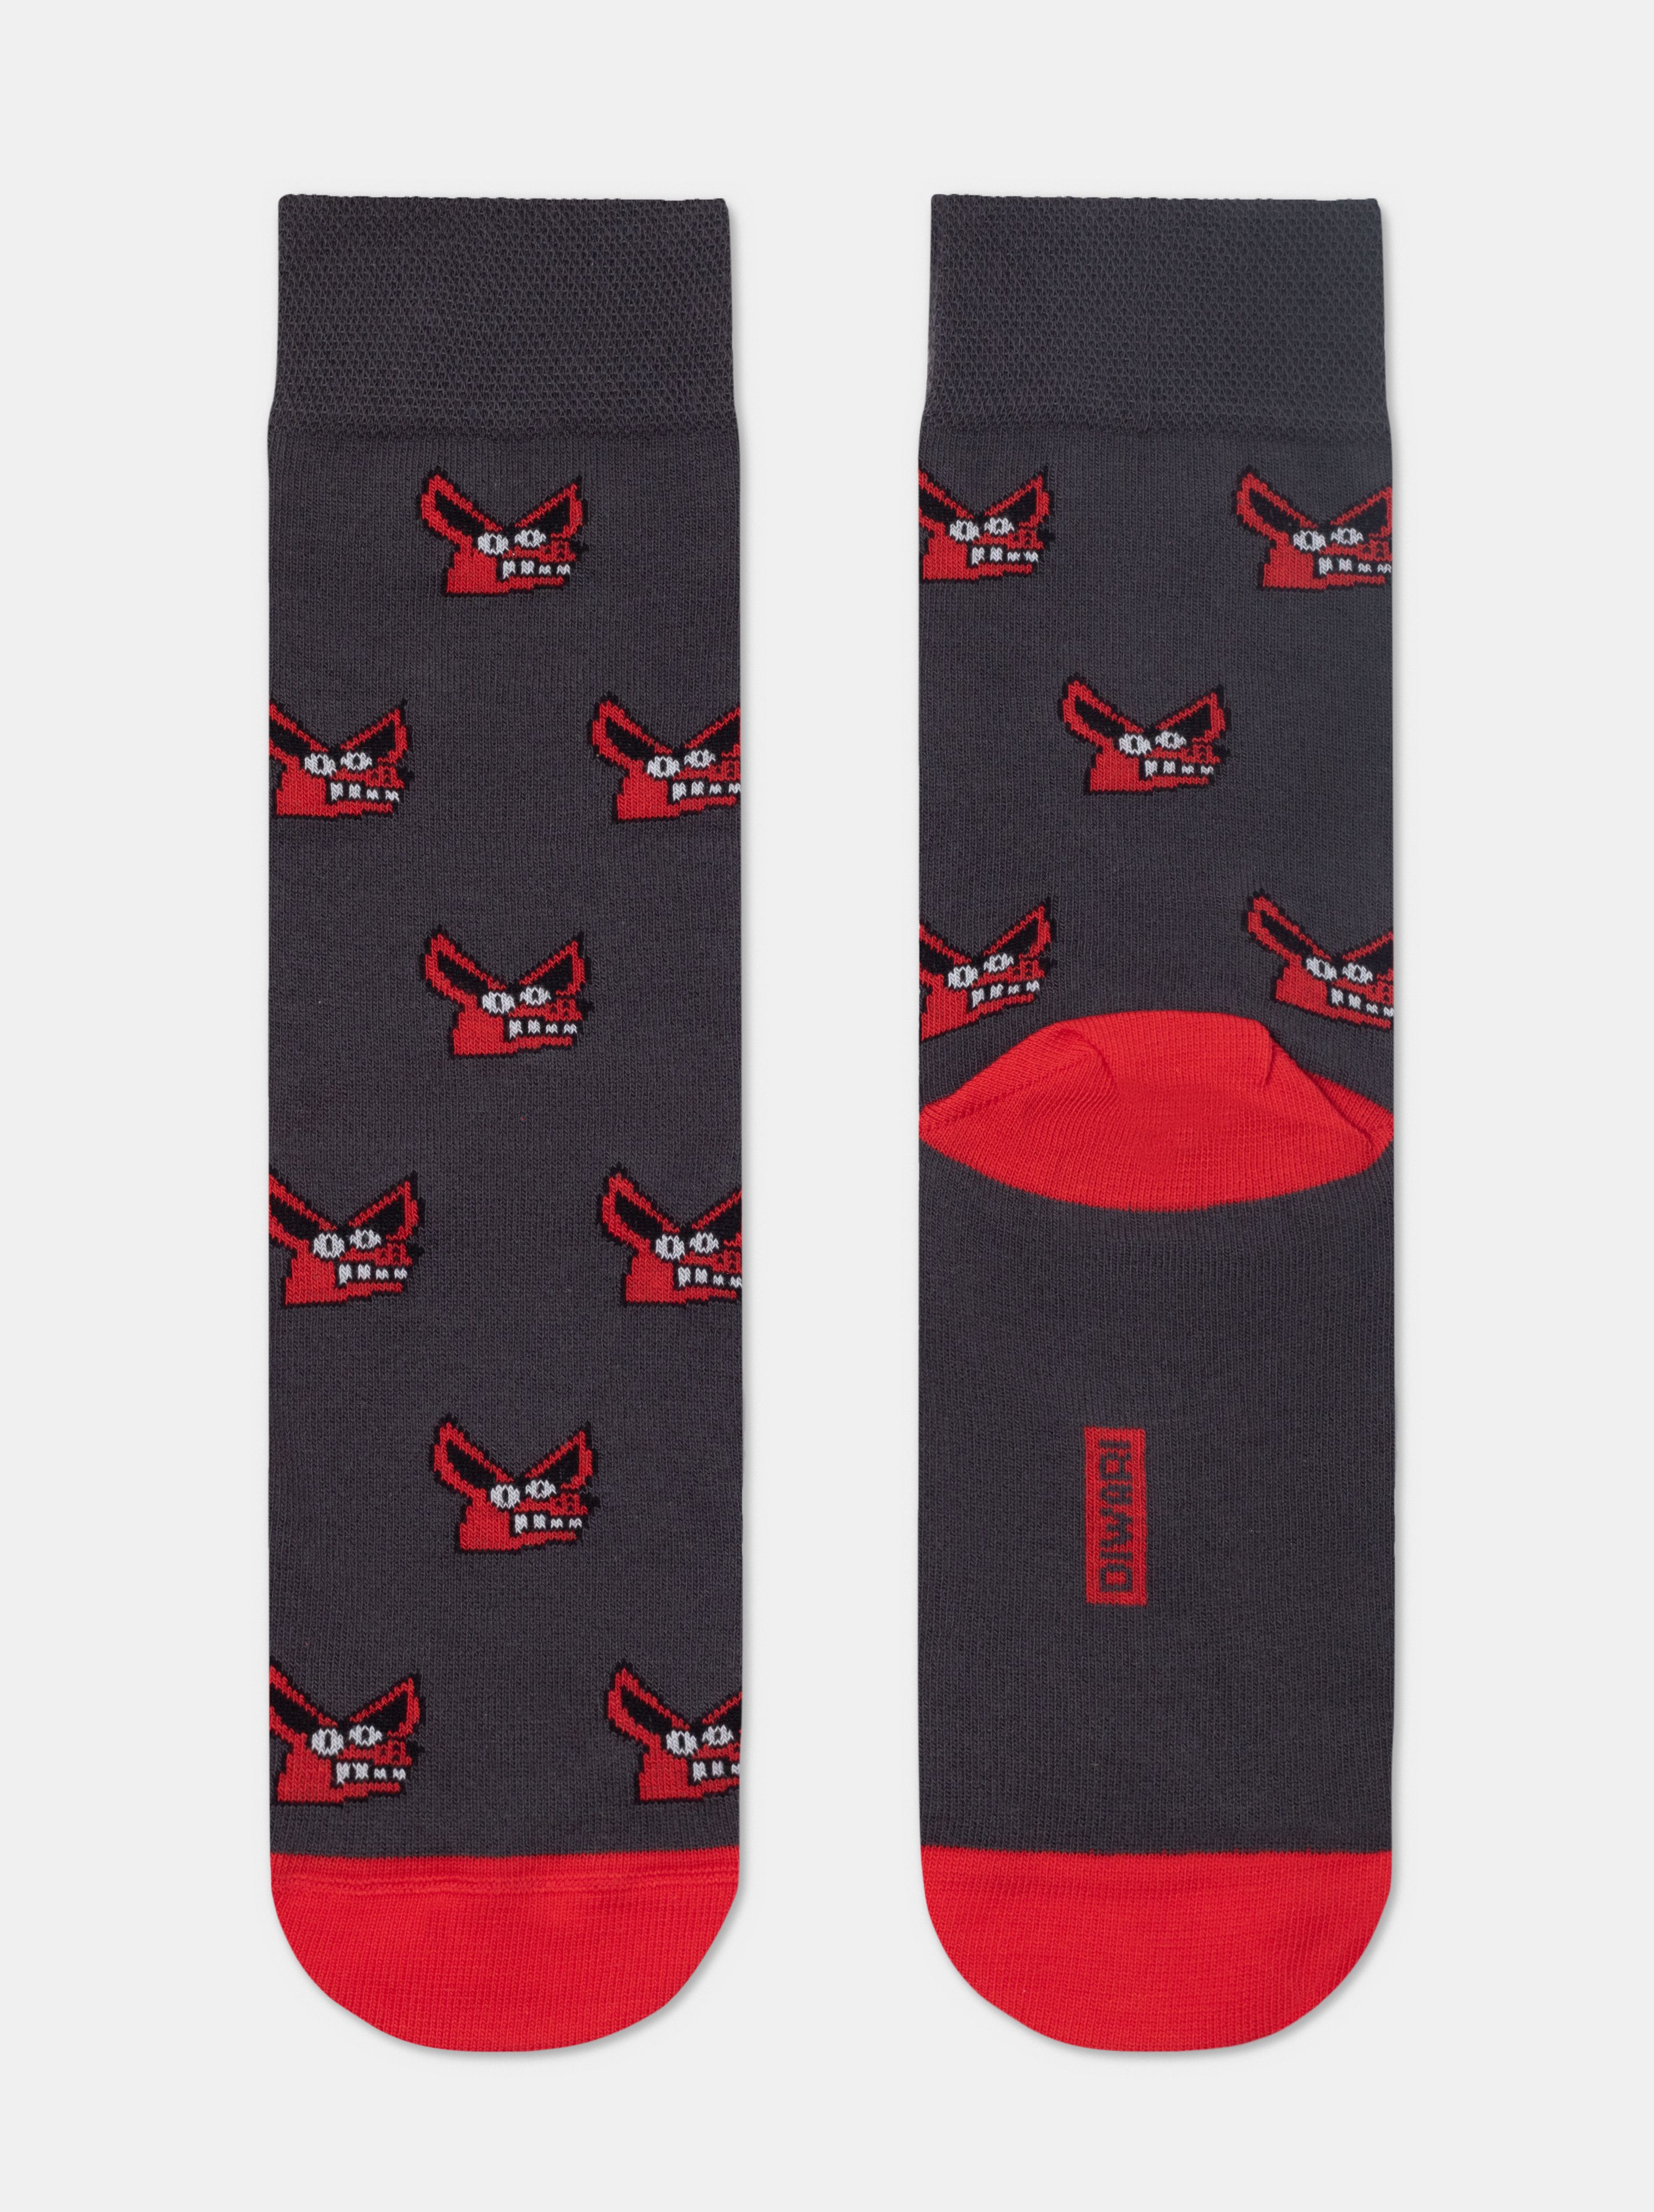 Хлопковые носки с рисунком «Fox» Conte ⭐️, цвет темно-серый, размер 40-41